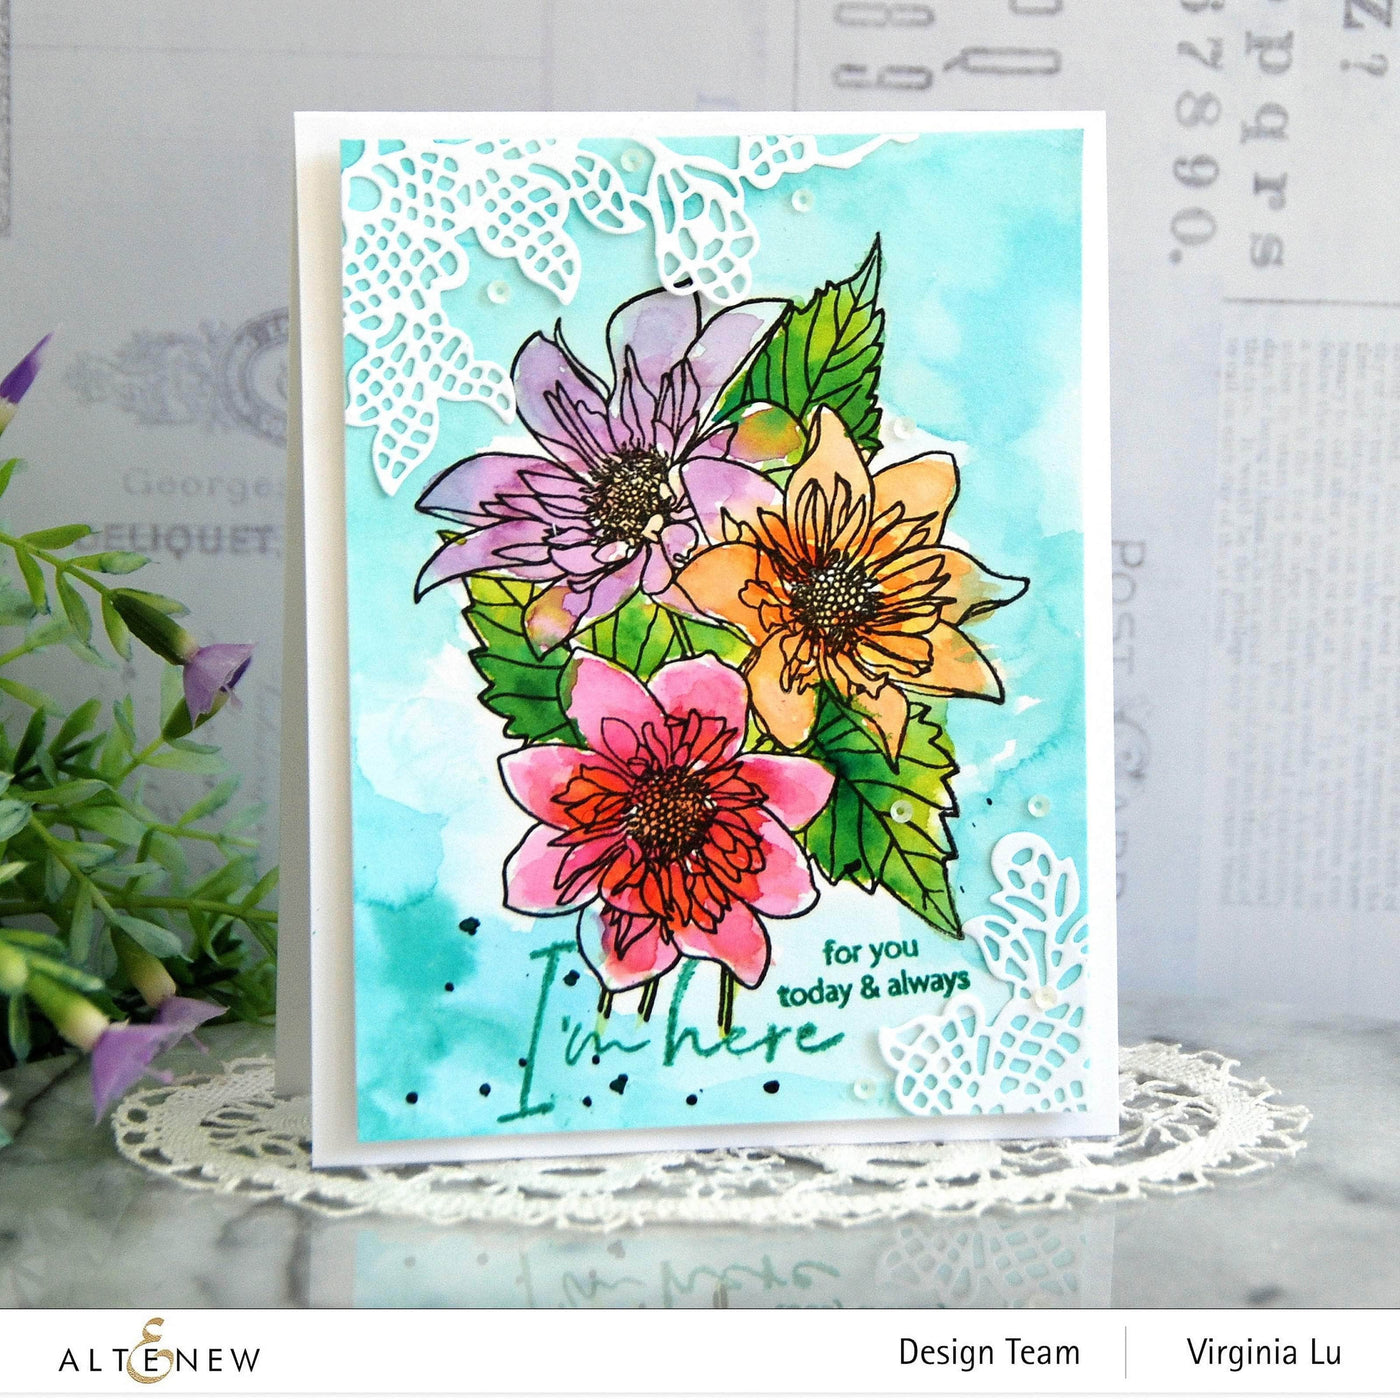 Altenew Stamp & Watercolor Bundle Paint-A-Flower: Fashion Monger Dahlia & Watercolor Essential 12 Pan Set Bundle